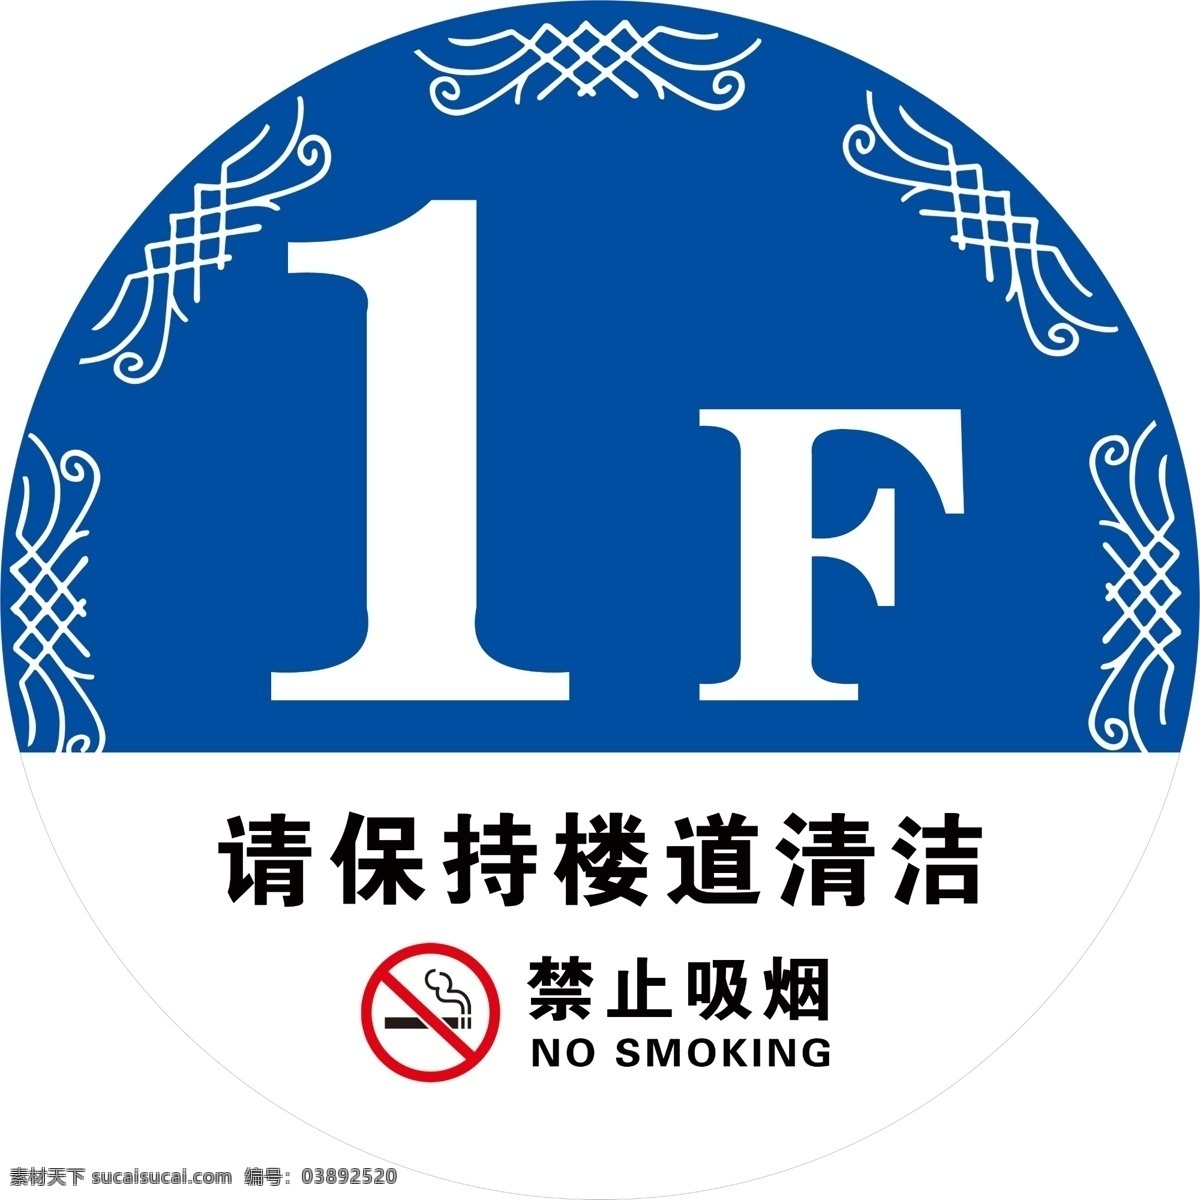 楼号牌 楼层牌 楼号 保持楼道清洁 禁止吸烟 名片卡片